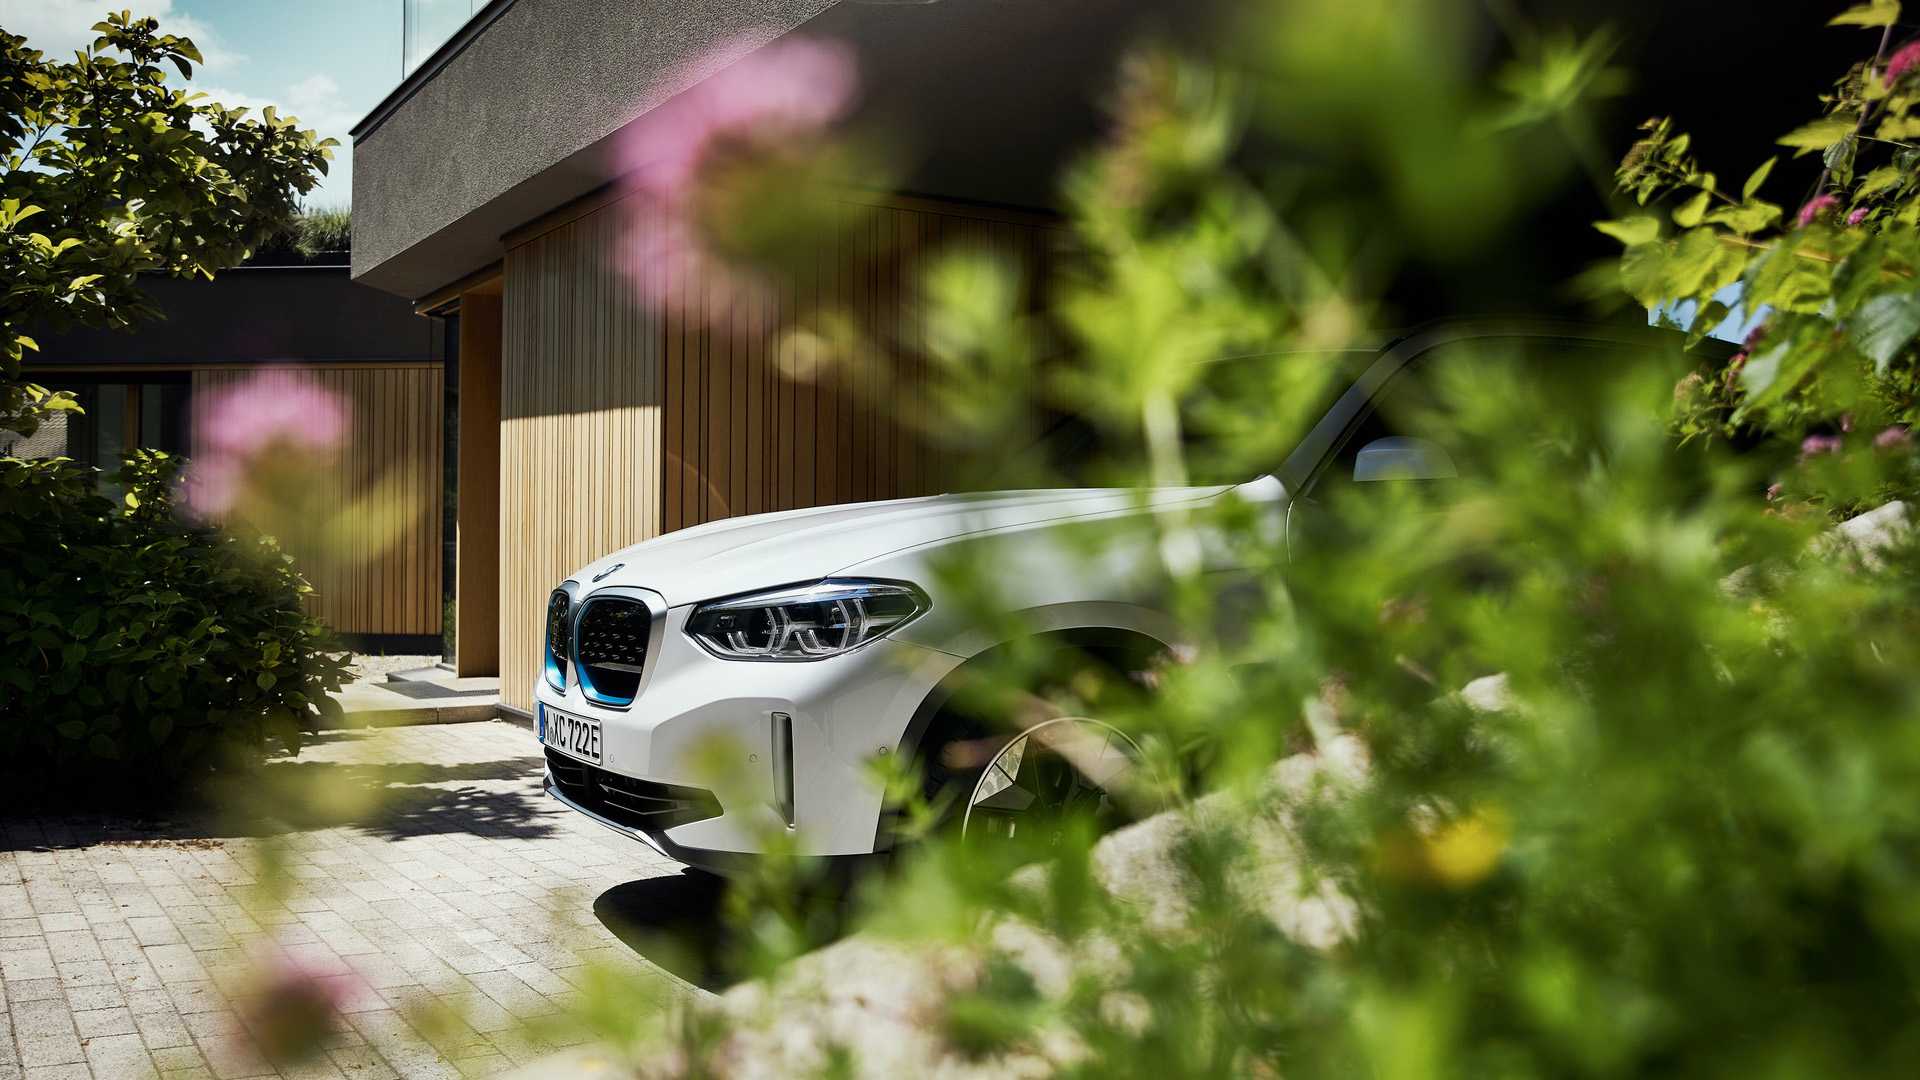 BMW iX3 2021 เอสยูวีพลังงานไฟฟ้าล้วนรุ่นแรก วิ่งได้ 460 กม. จากการชาร์จครั้งเดียว